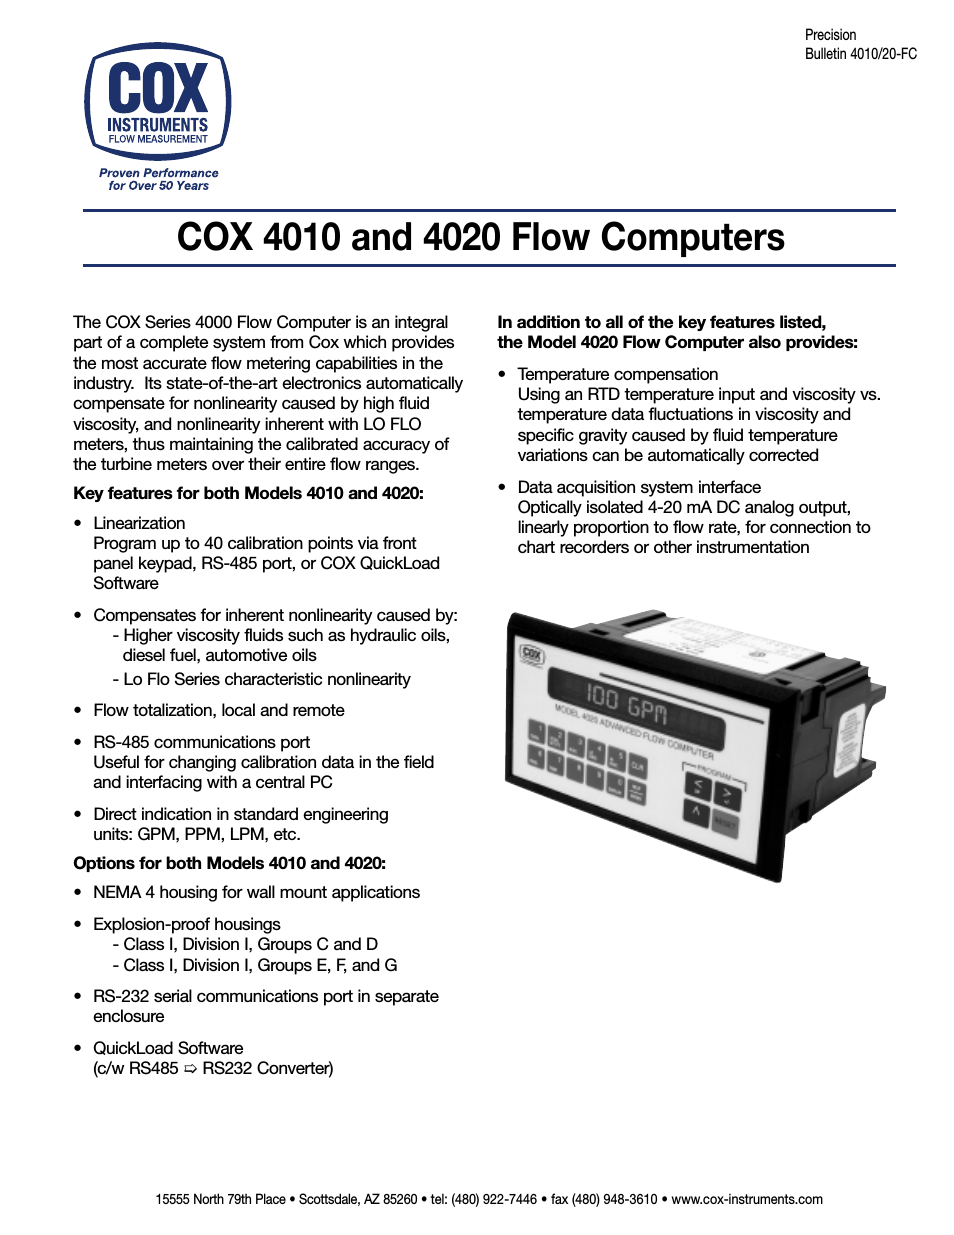 4010 Flow Computers